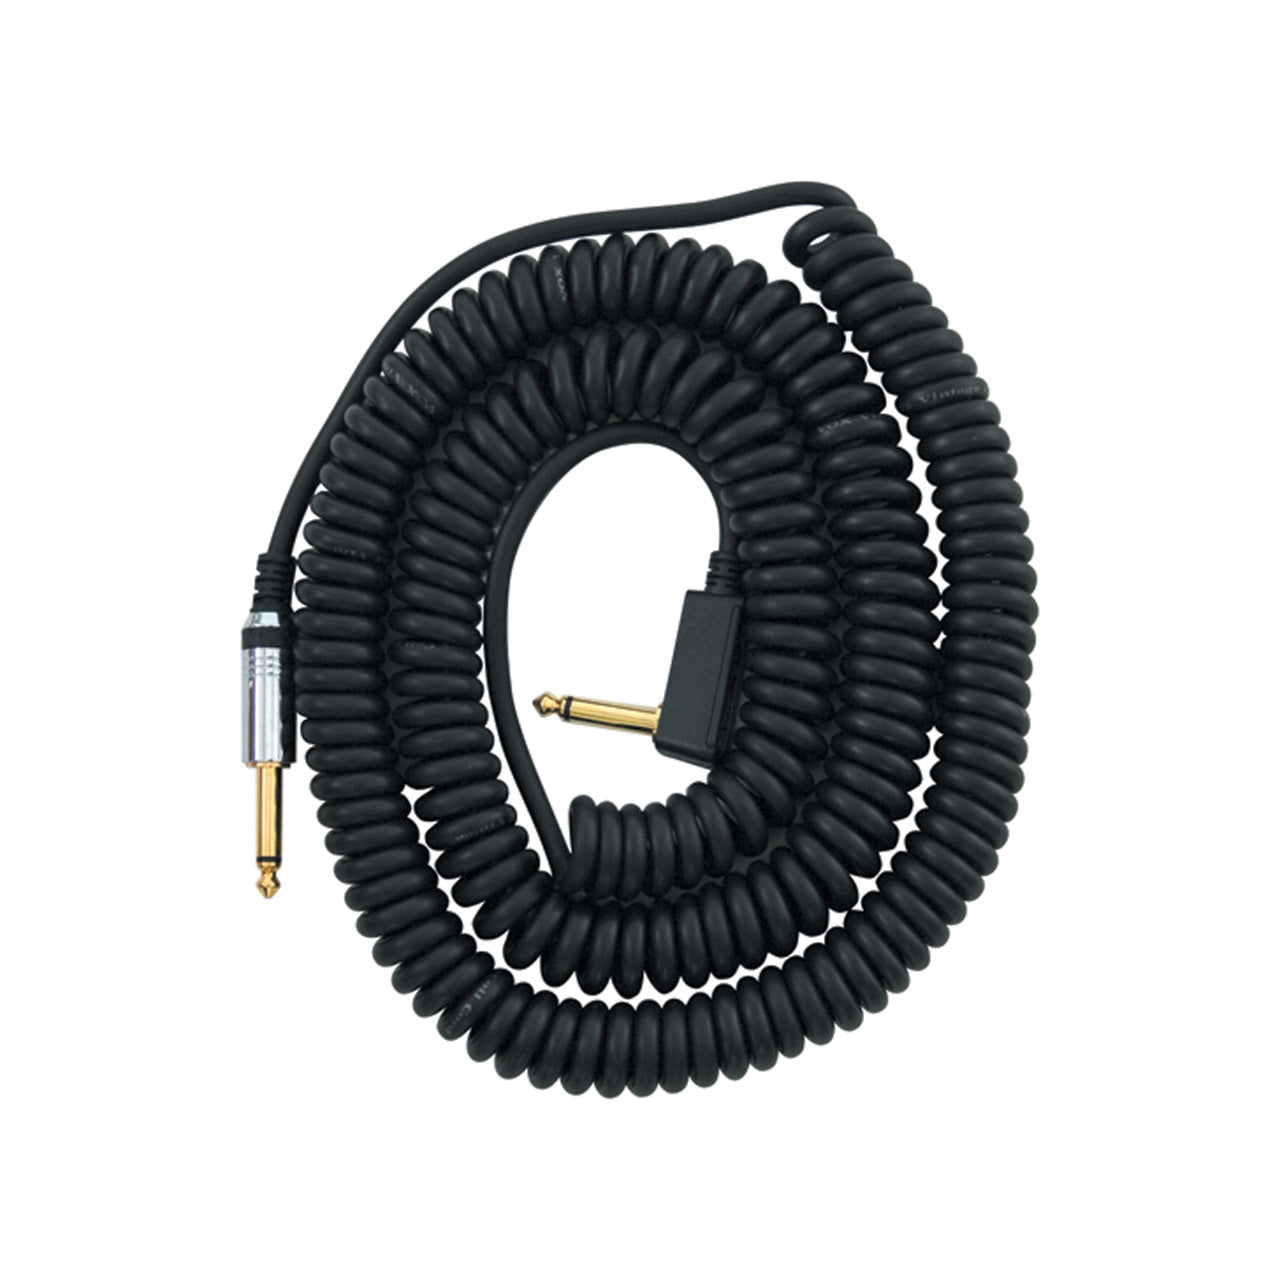 Vox VCC90 Cable (VCC-90 / VCC 90) – Black